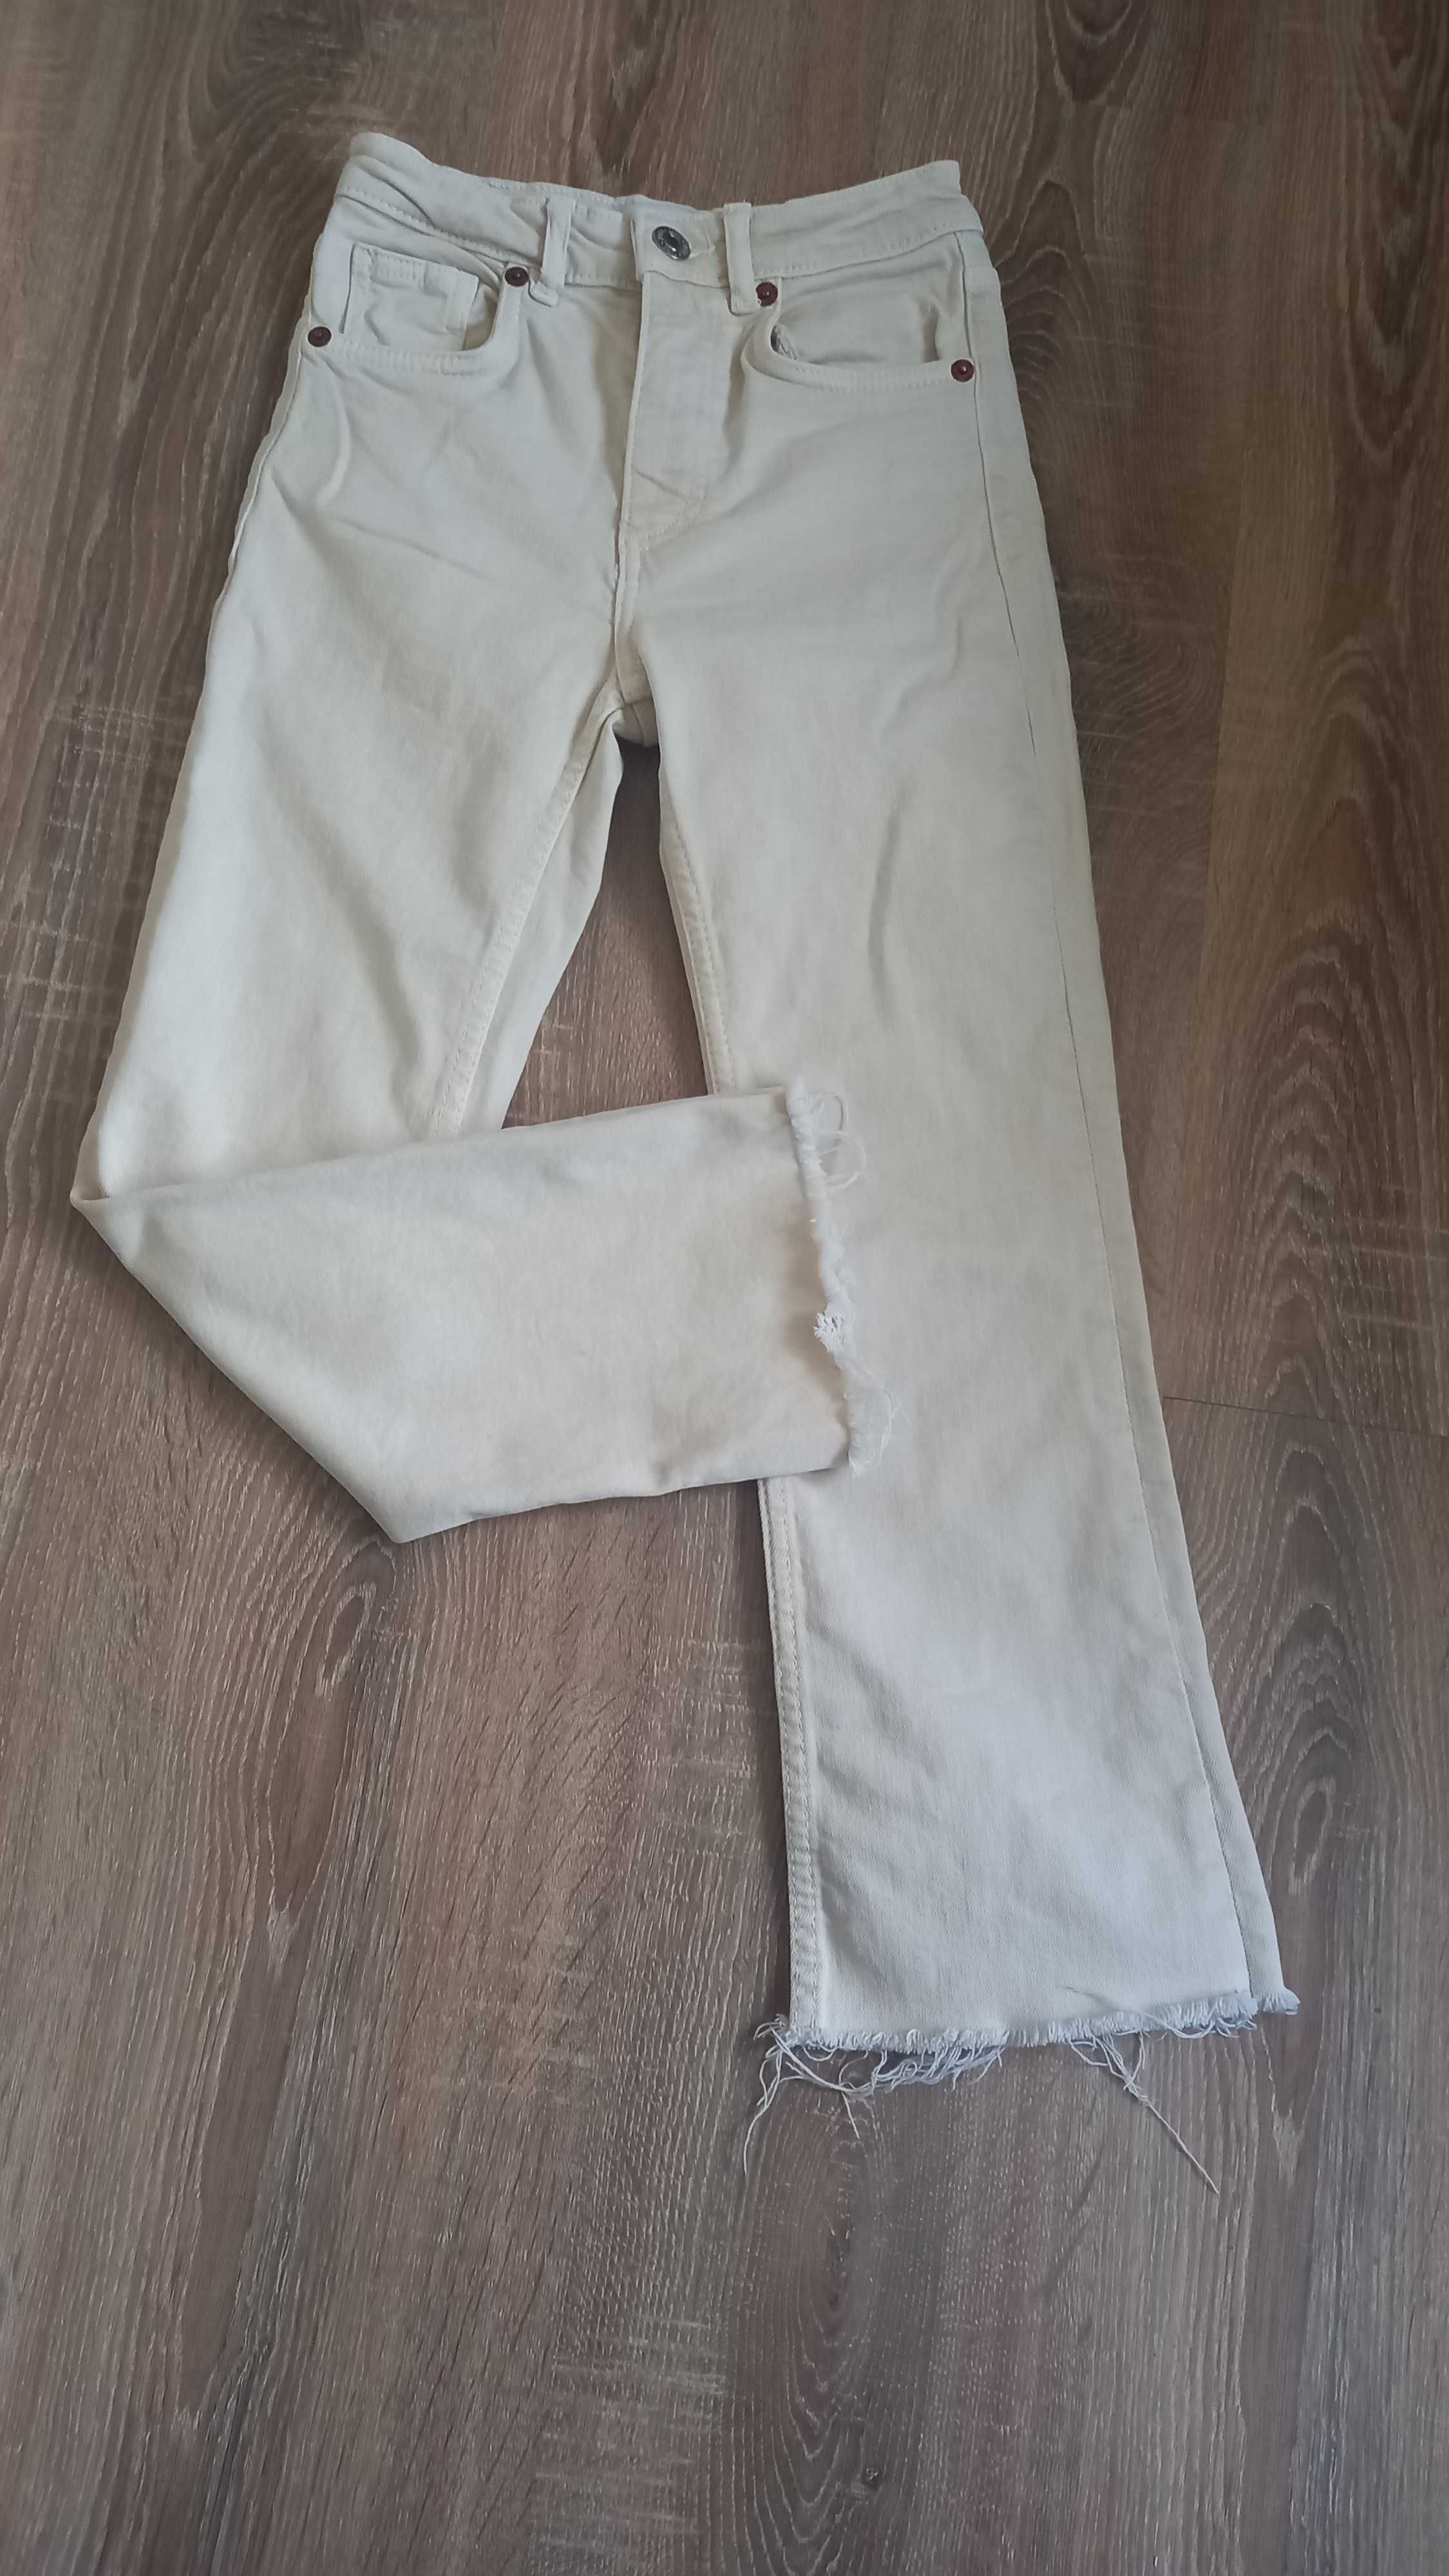 Spodnie dla dziewczynki szeroka nogawka dzwony 10-11lat Zara